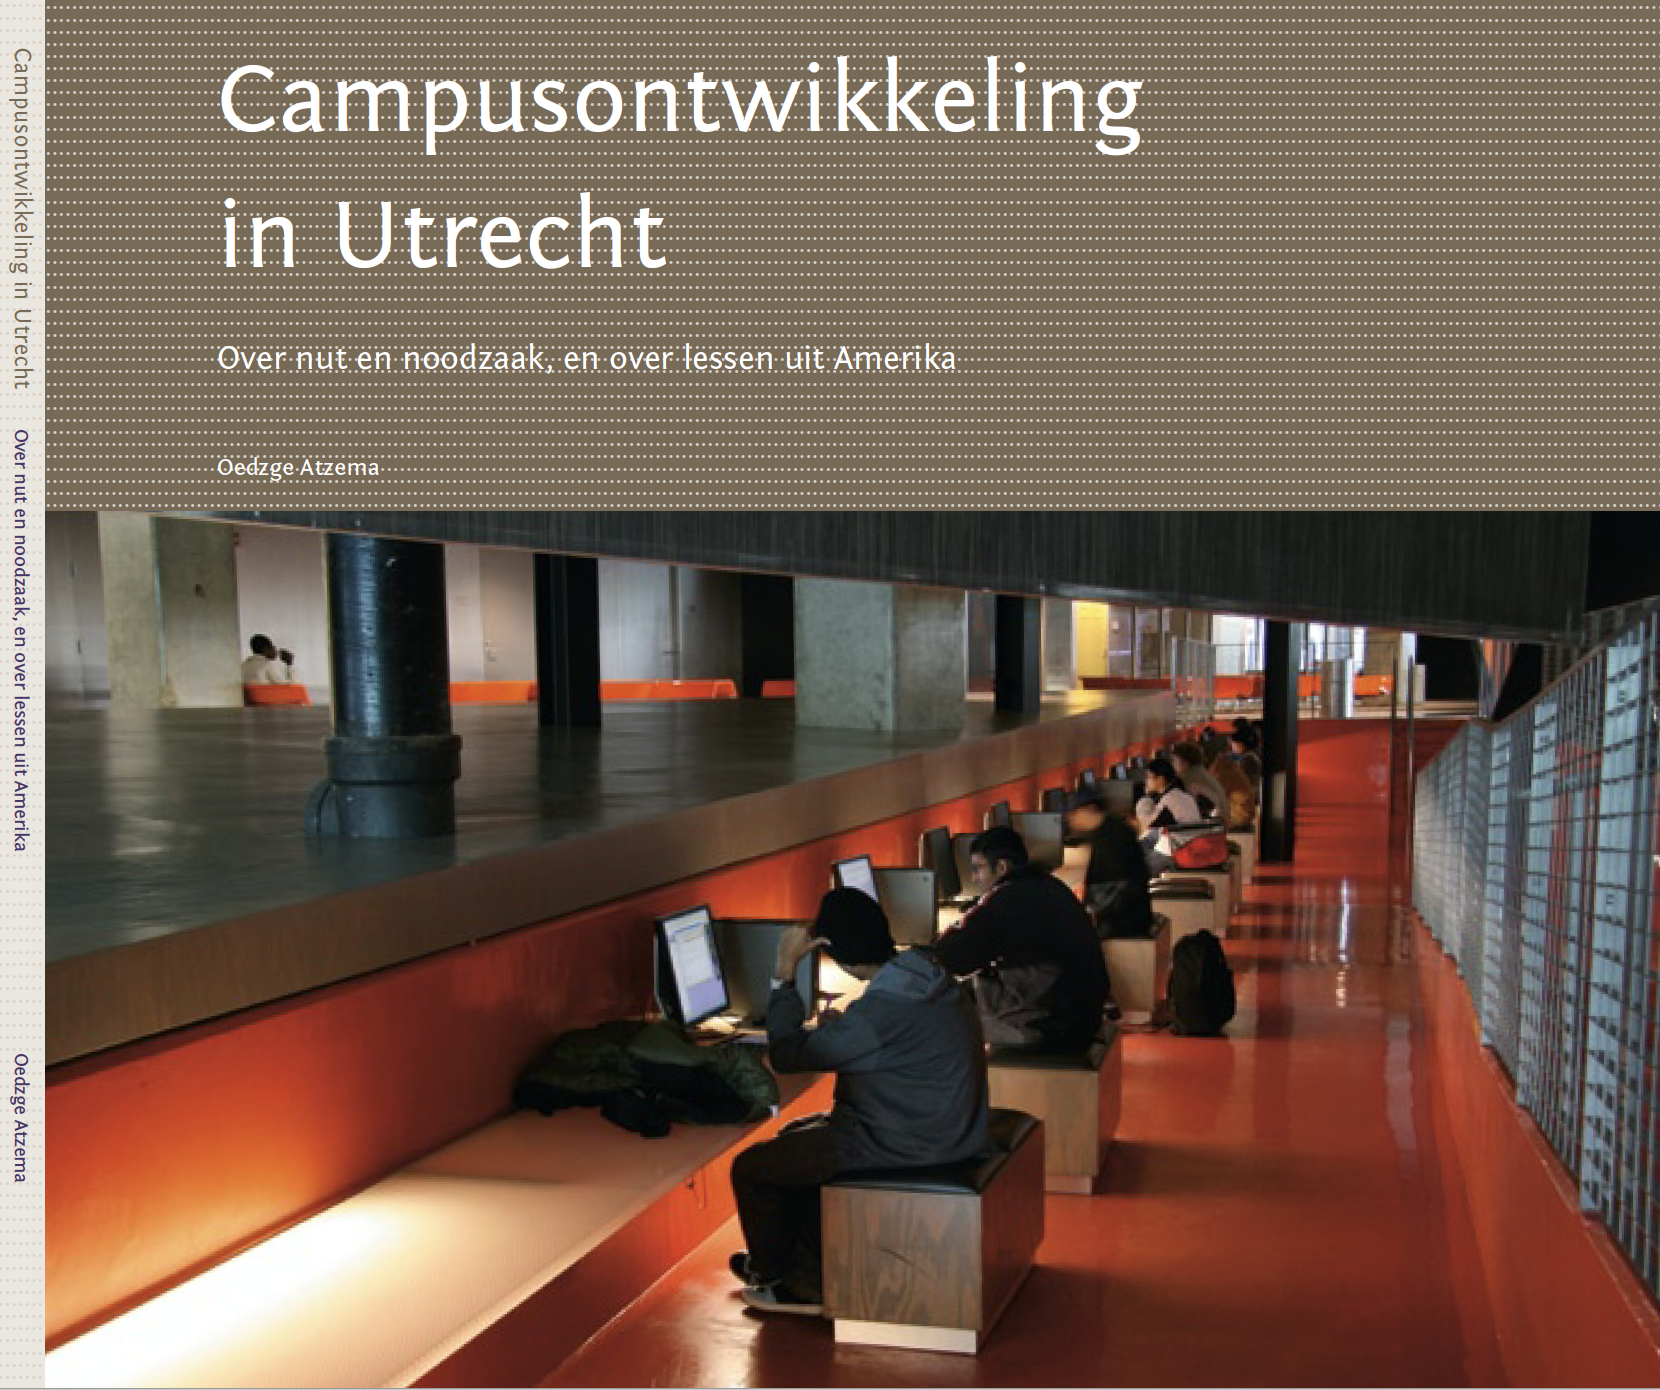 Book Campusontwikkeling in Utrecht